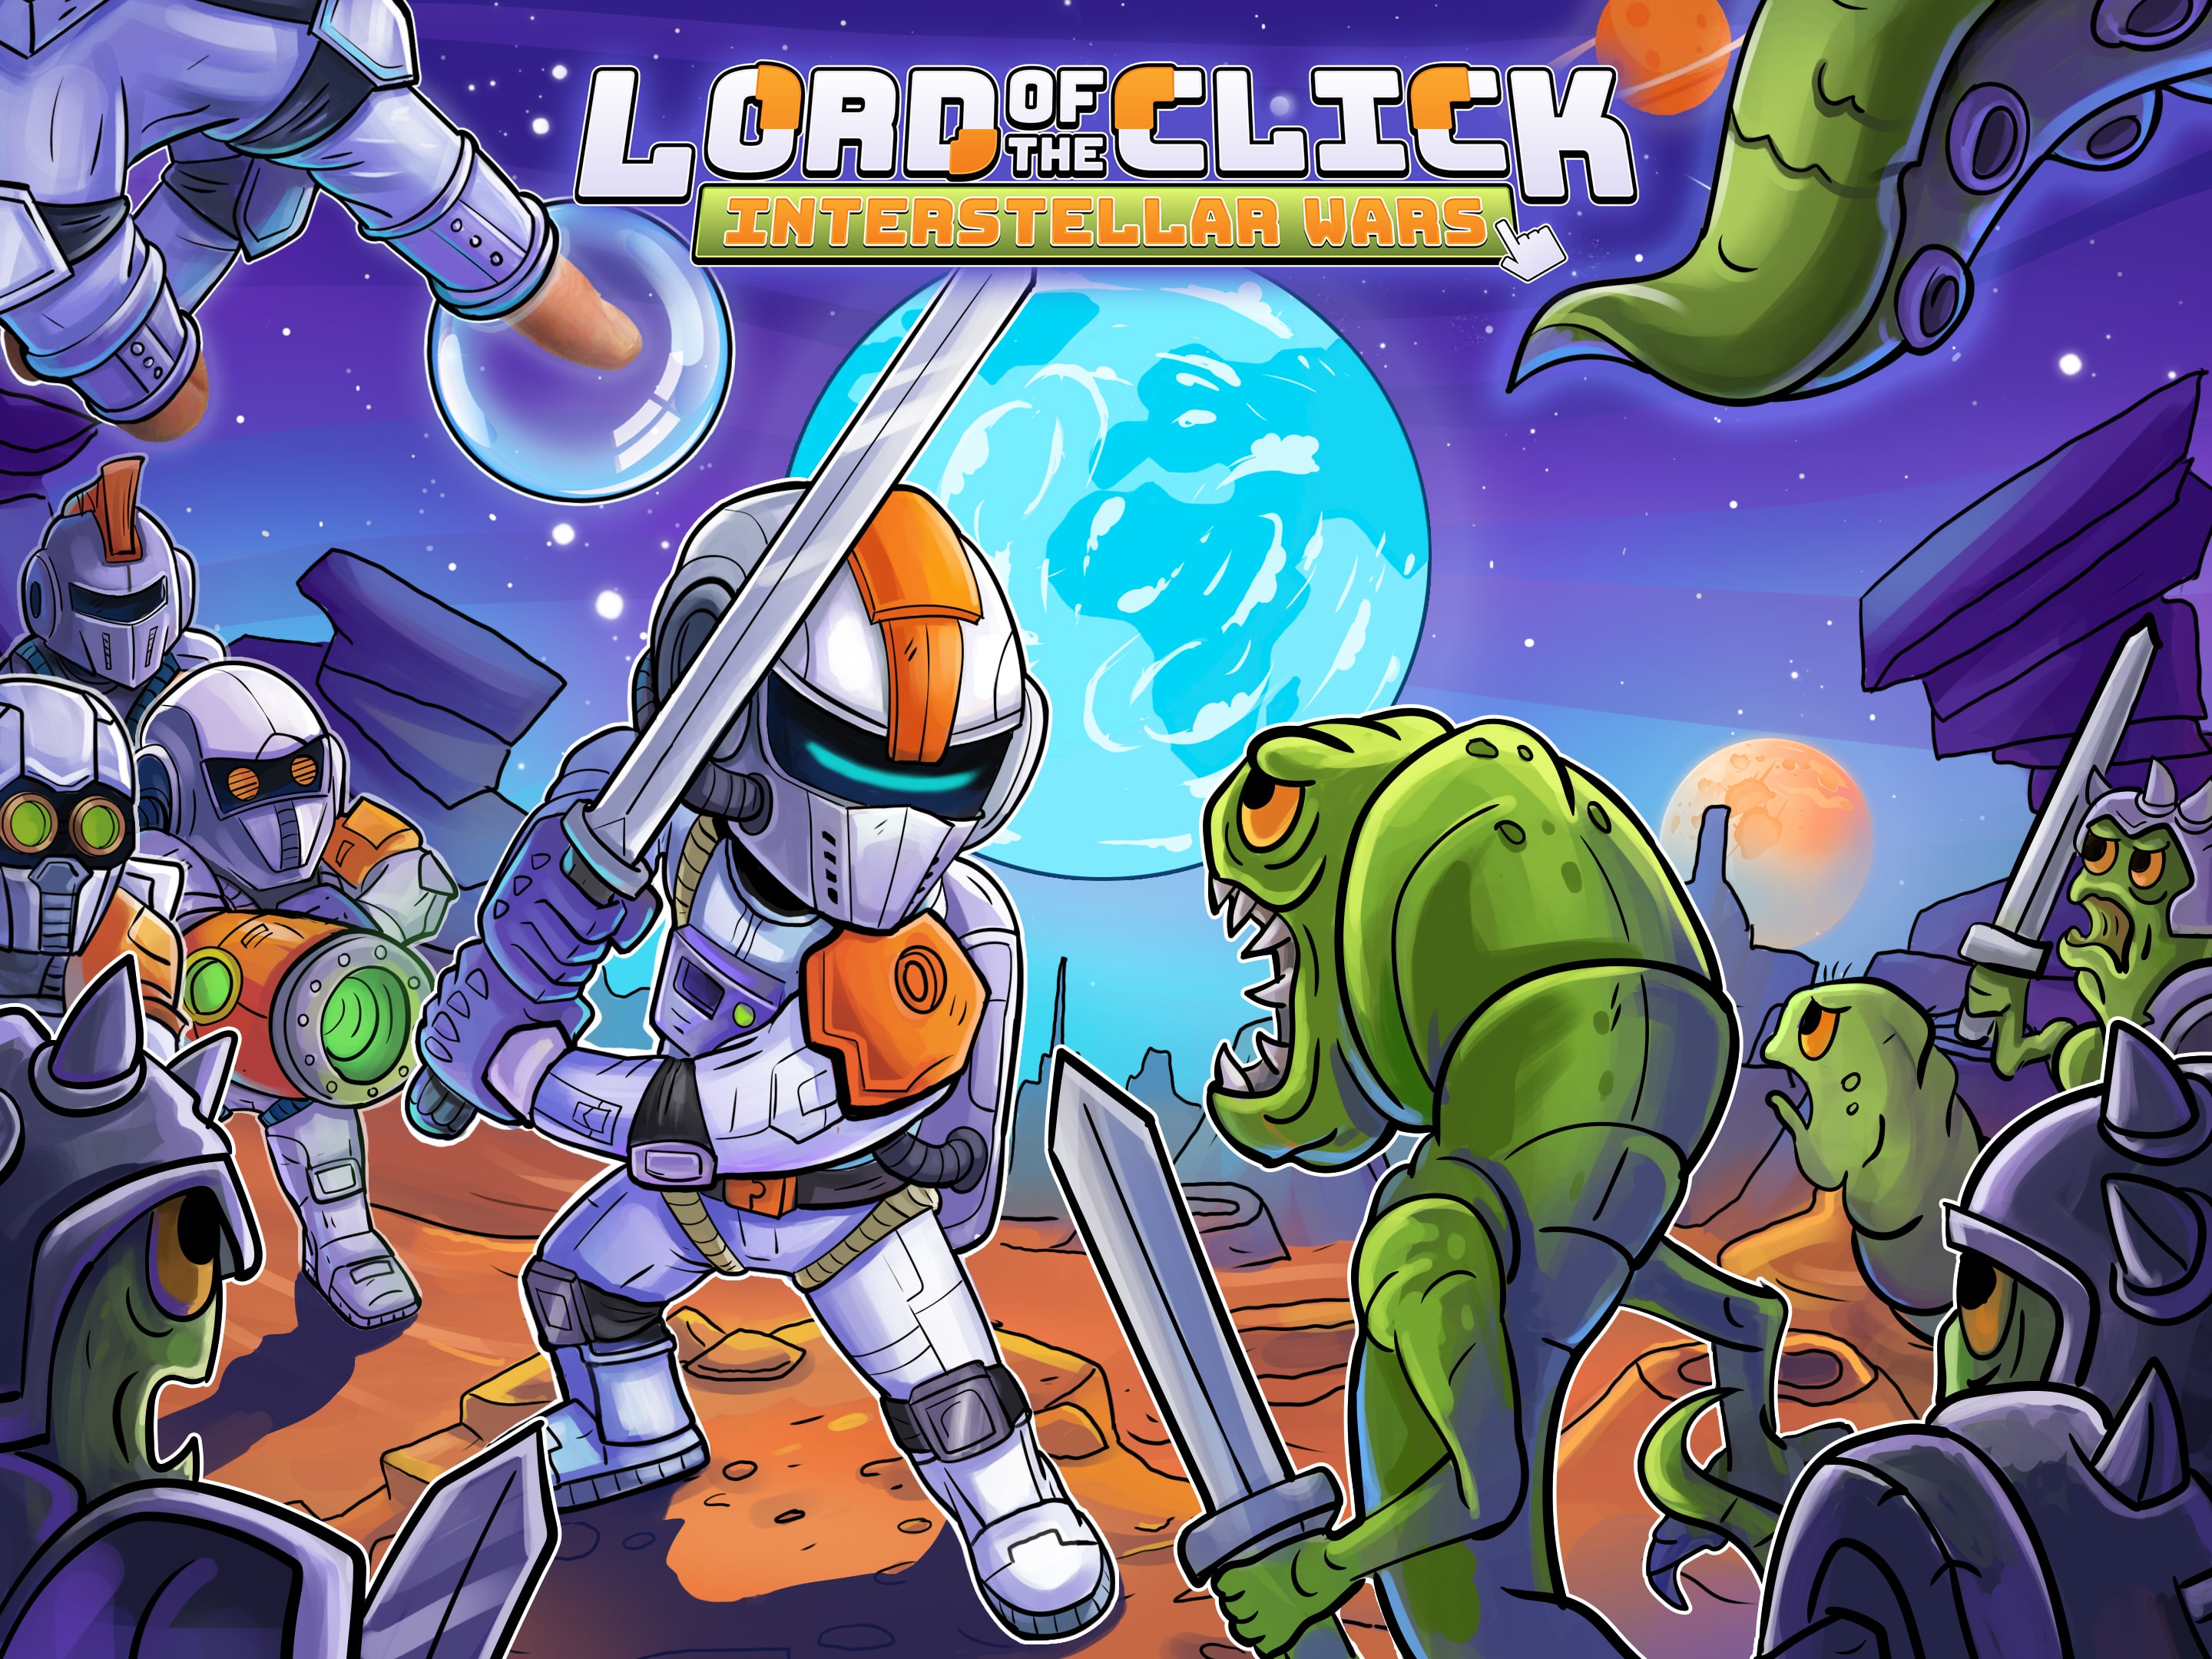 Lord of the Click: Interstellar Wars, Aplicações de download da Nintendo  Switch, Jogos